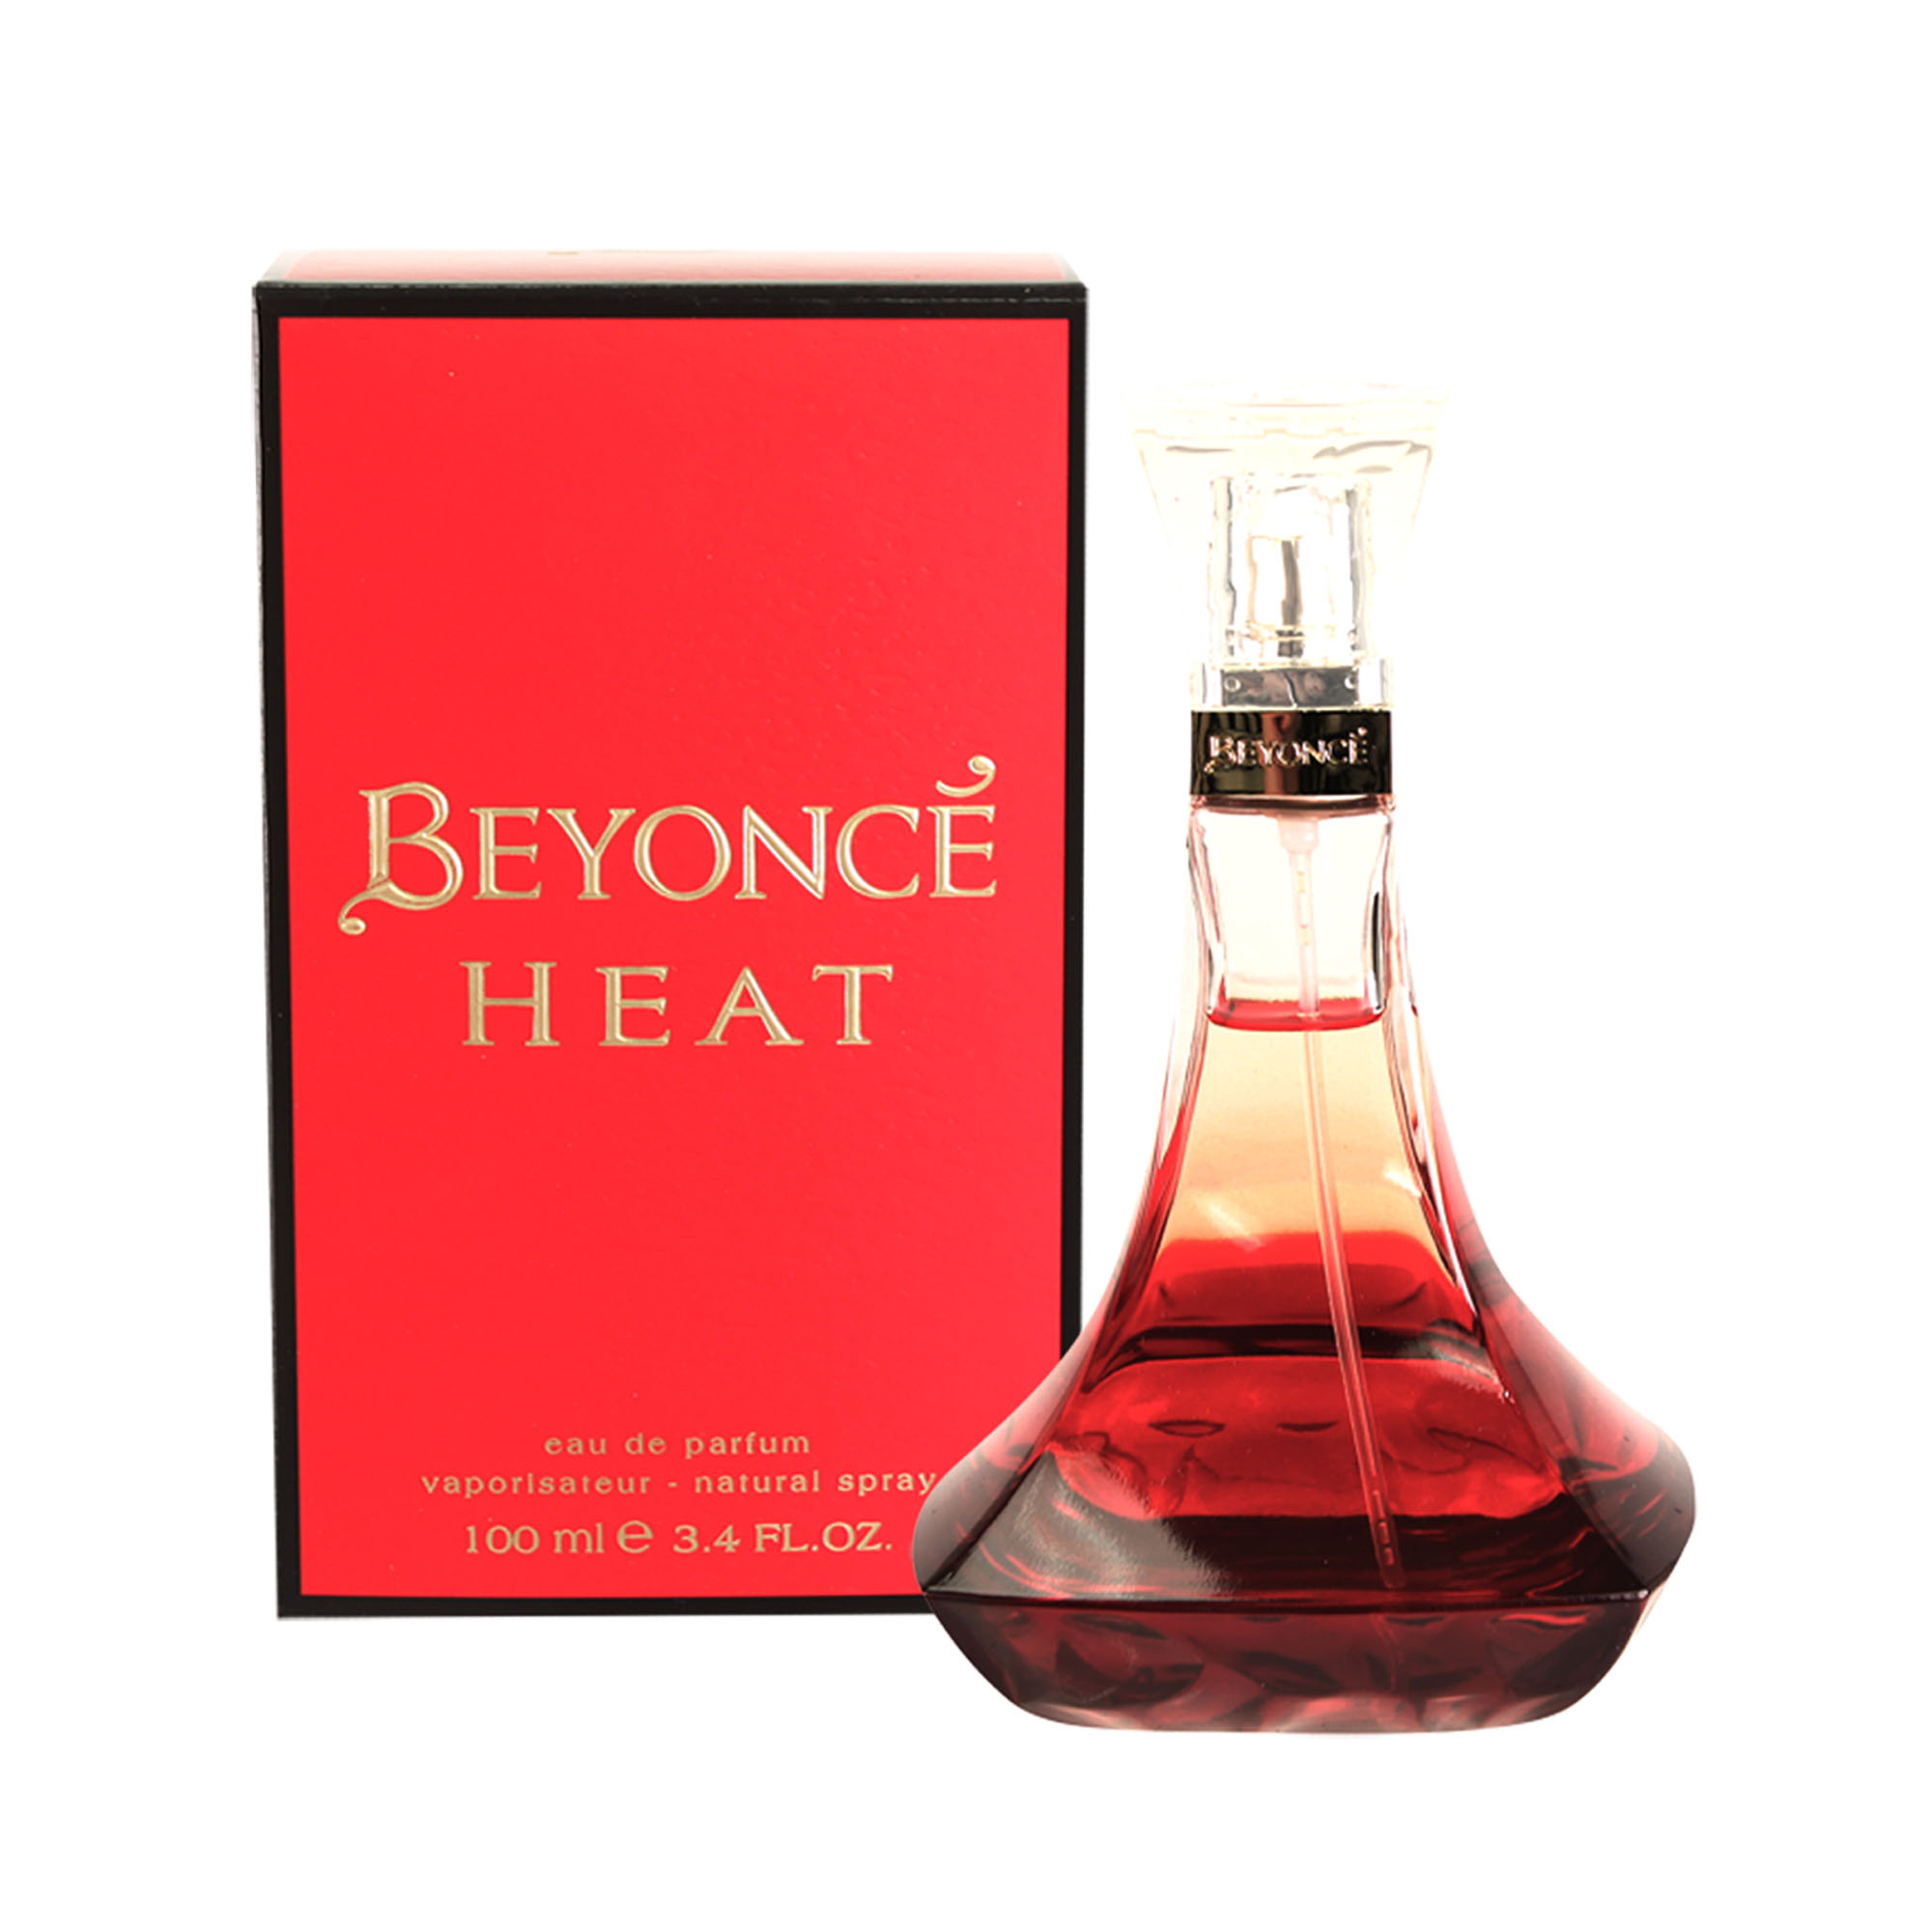 Beyonce Heat Eau De Parfum, Perfume for Women, 3.4 oz - image 2 of 3